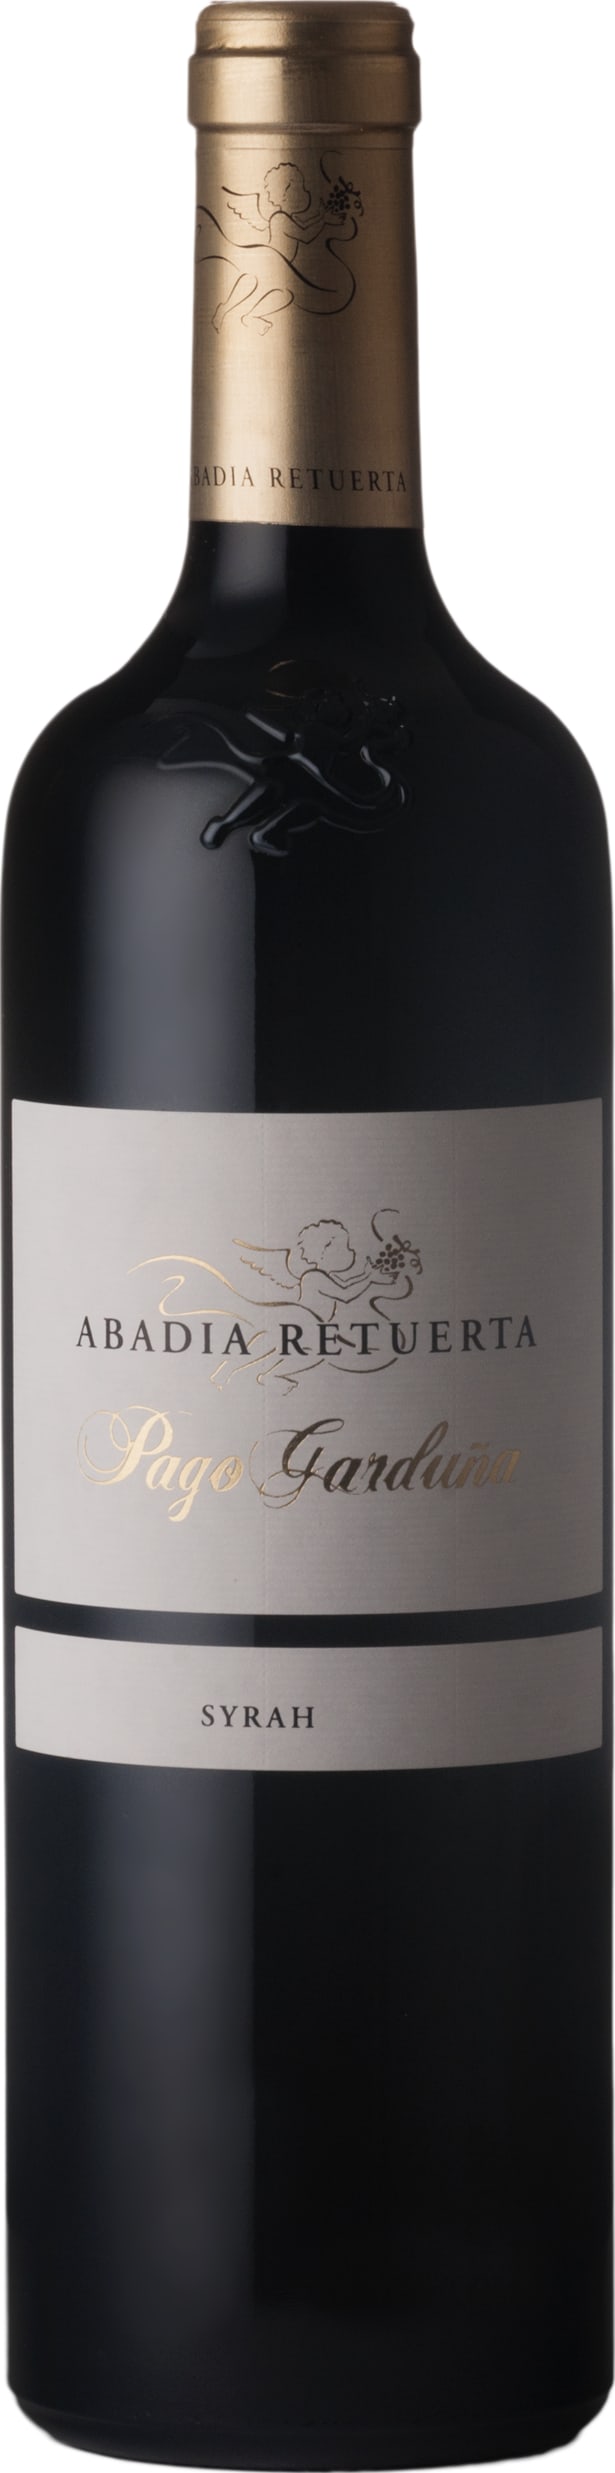 Abadia Retuerta Pago Garduna Syrah 2017 75cl - Buy Abadia Retuerta Wines from GREAT WINES DIRECT wine shop